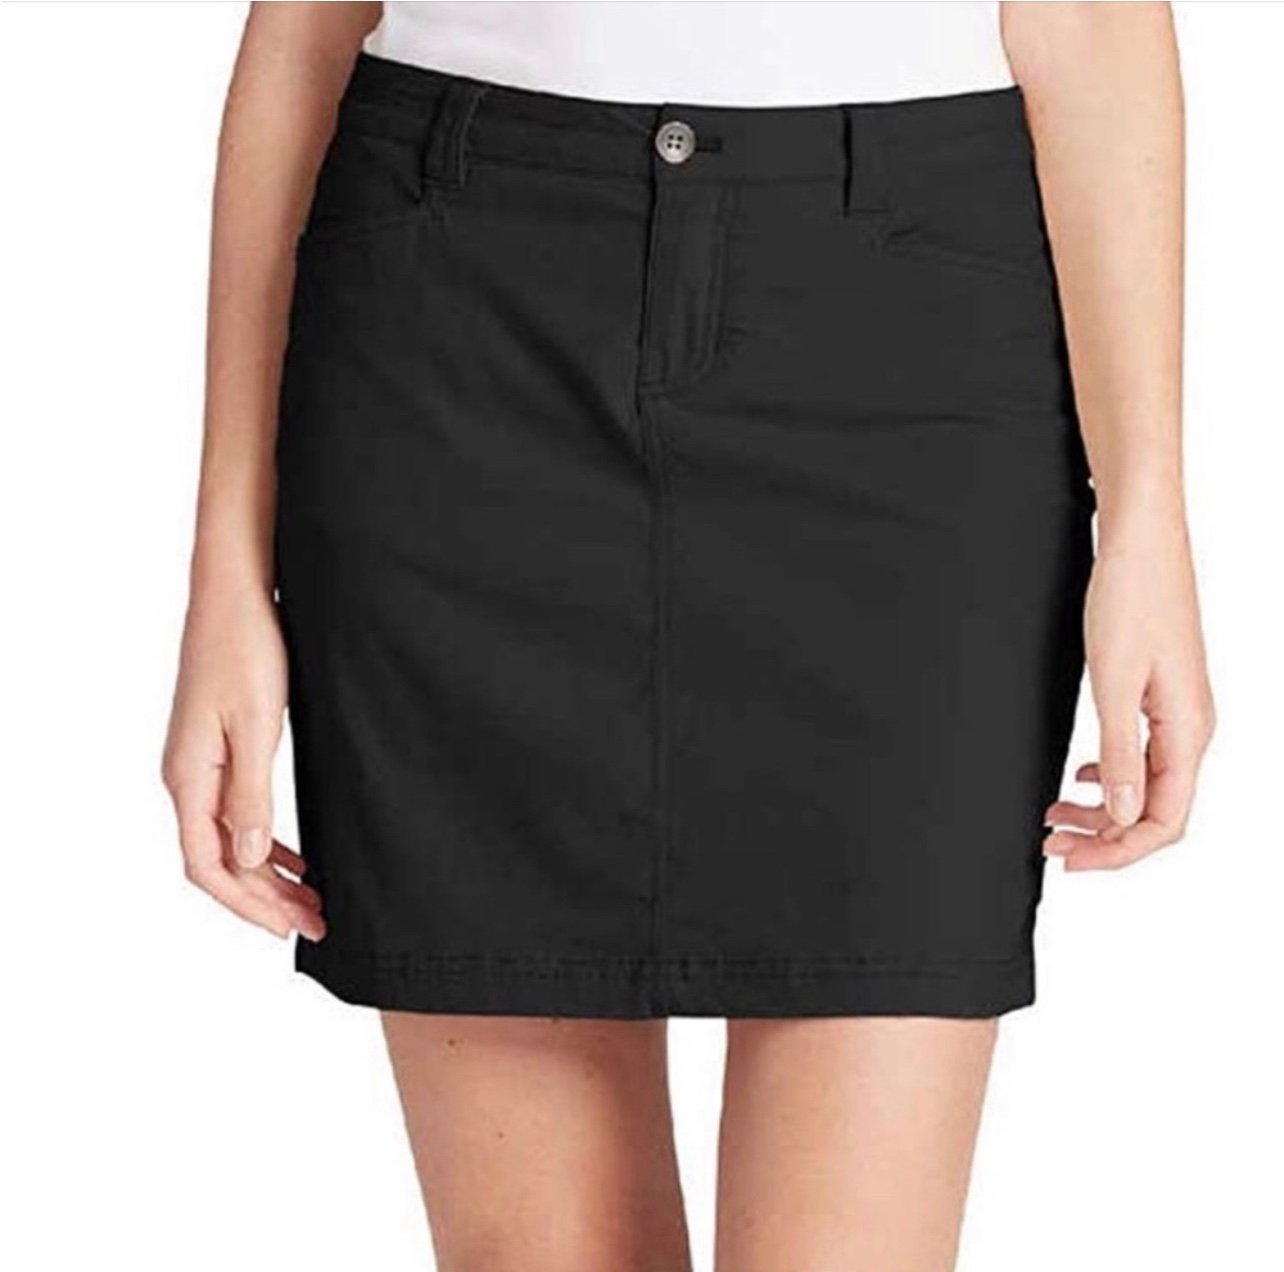 Gorgeous Eddie Bauer Black Adventurer Skirt Skort Size 